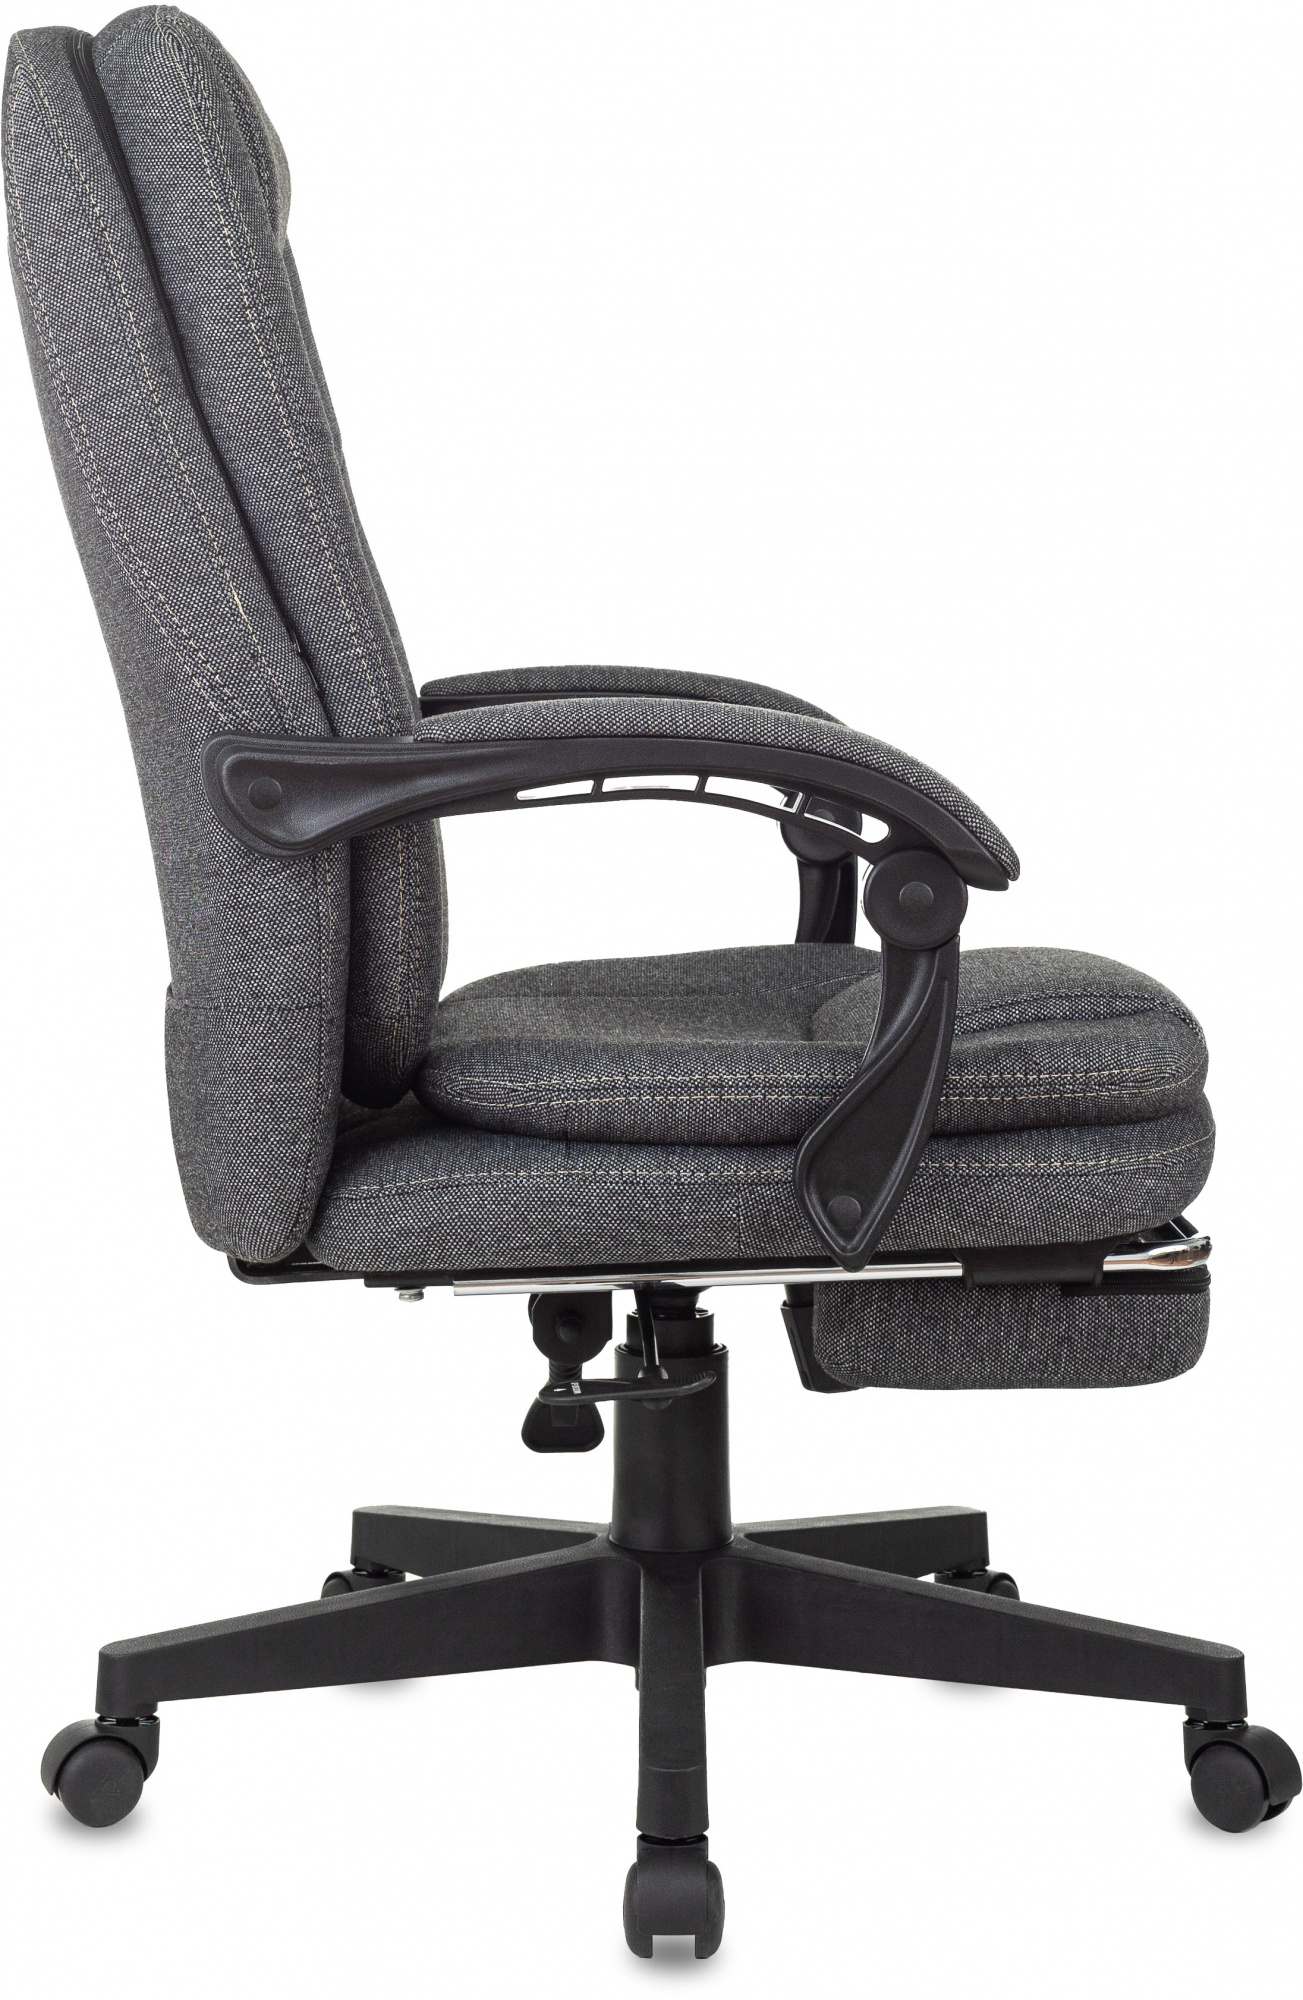 Кресло руководителя Бюрократ CH868MSGF серый 3C1 крестов пластик подстдля ног пластик черный - Дополнительные фотографии